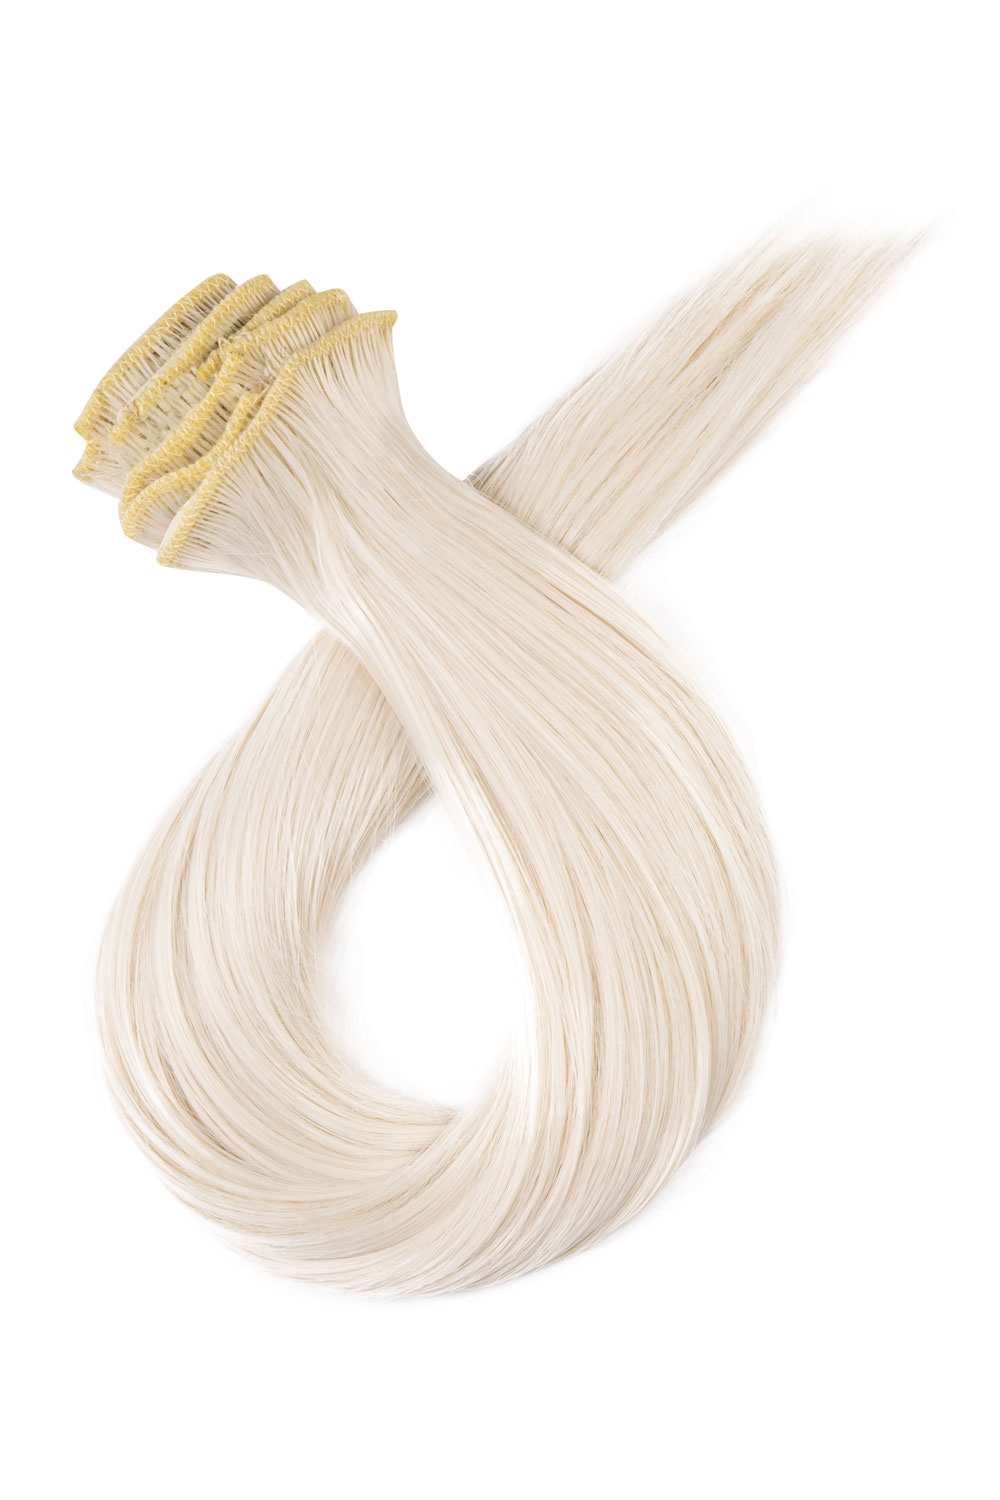 Platinové blond clip in vlasy, 60cm, 150g, farba 60